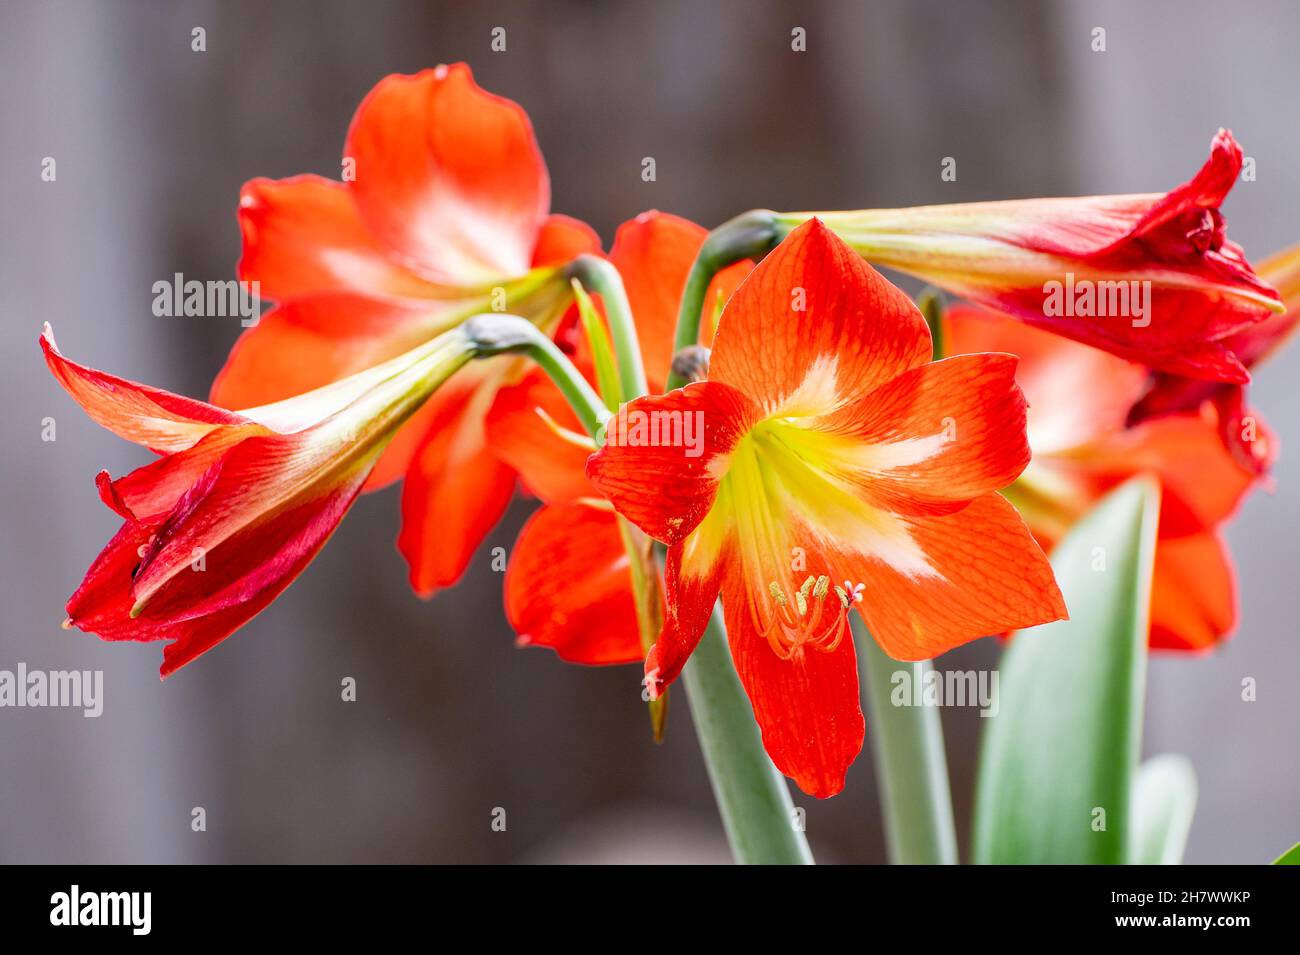 Blühende Orange Lily Blumen, Lilium ist eine Gattung von krautigen blühenden Pflanzen, die aus Zwiebeln wachsen, alle mit großen prominenten Blüten. Geschossen in Howrah, W Stockfoto